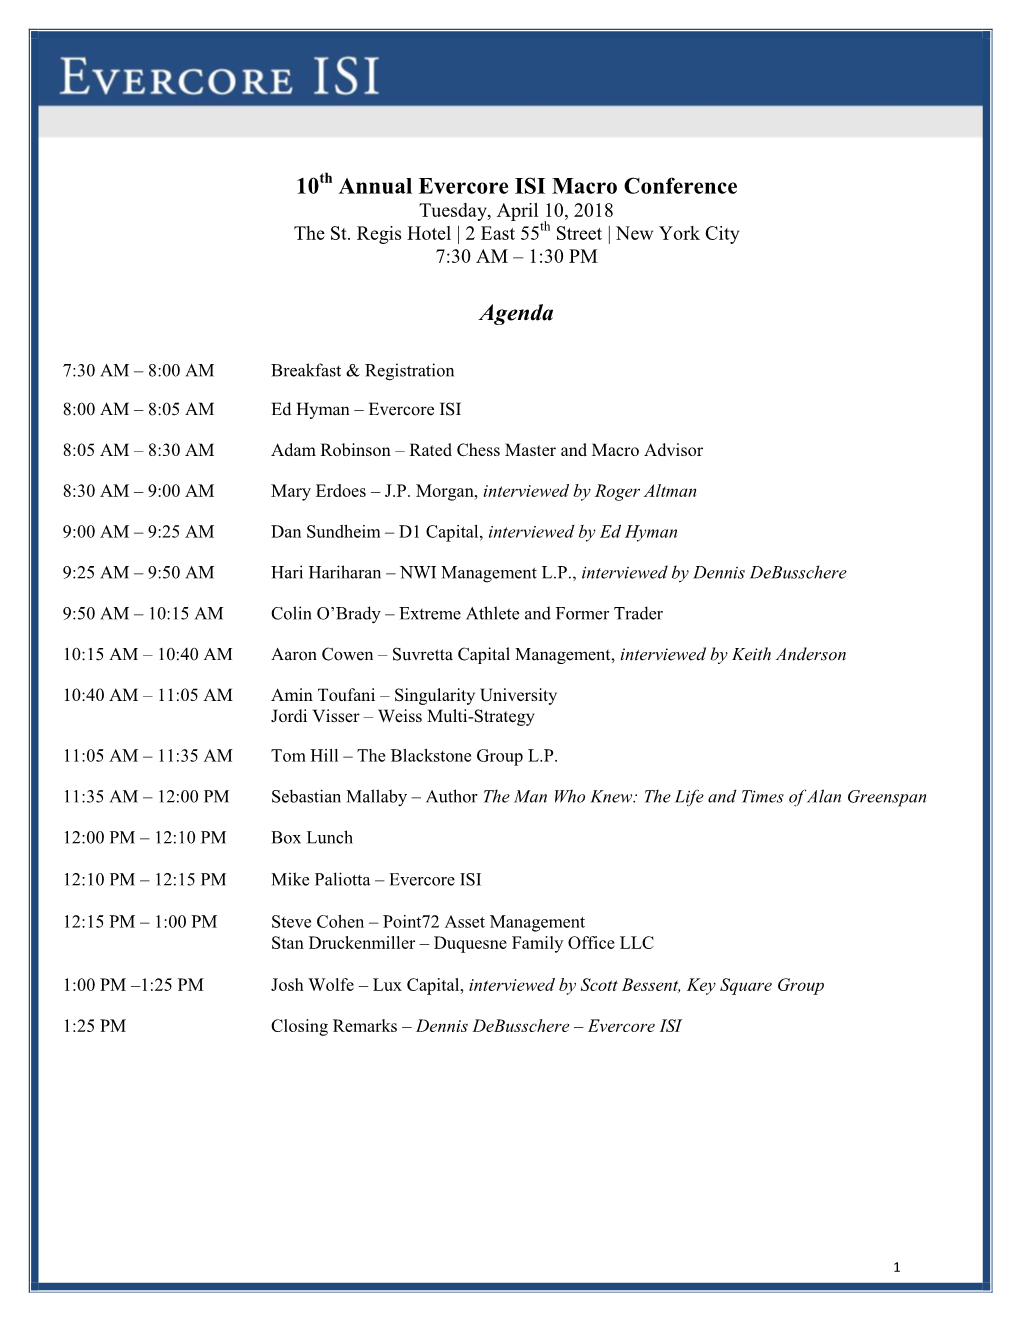 10 Annual Evercore ISI Macro Conference Agenda